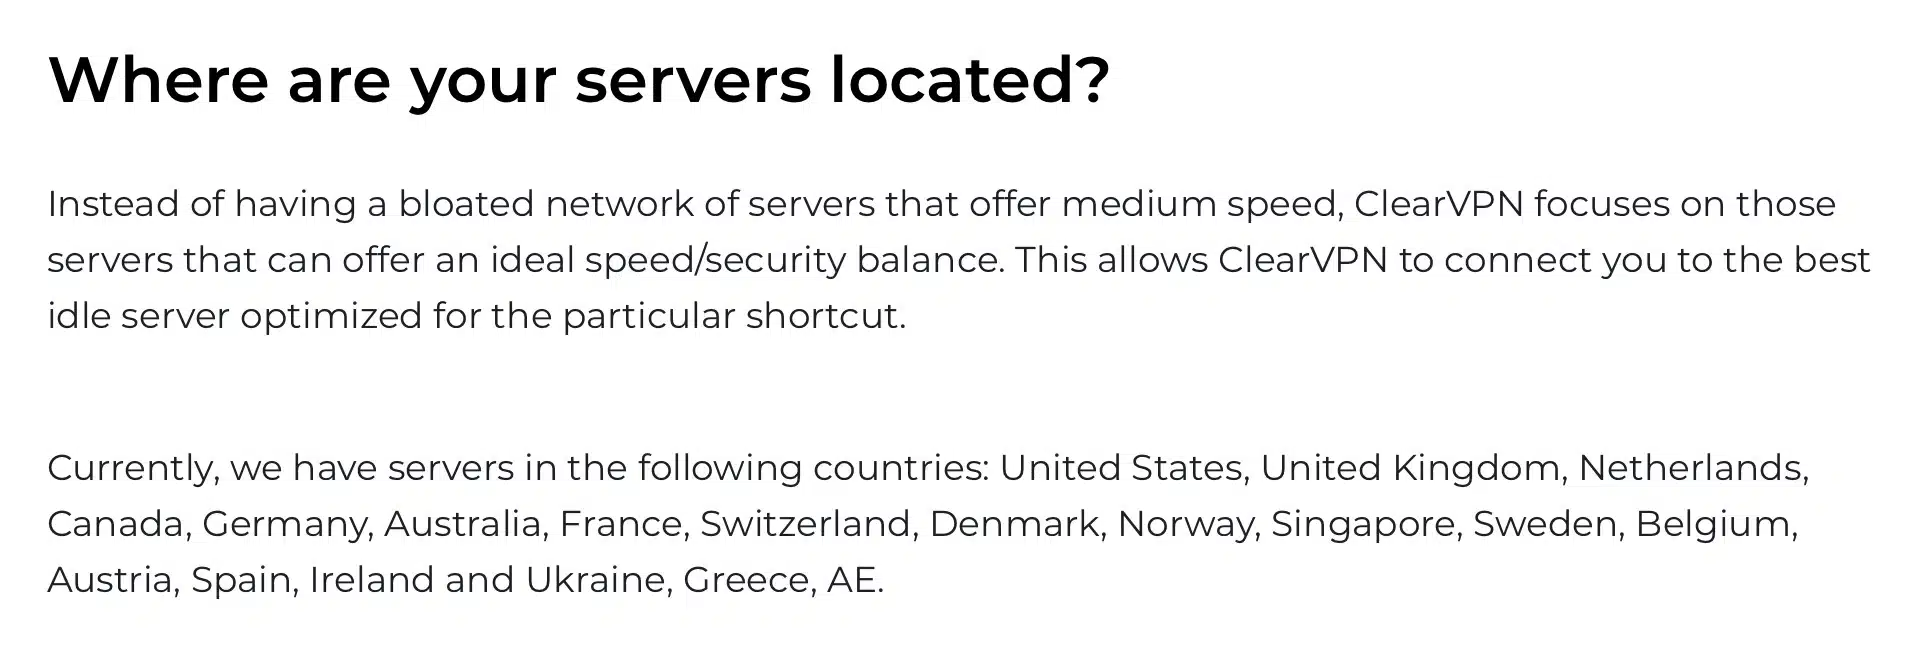 ClearVPN - Servers